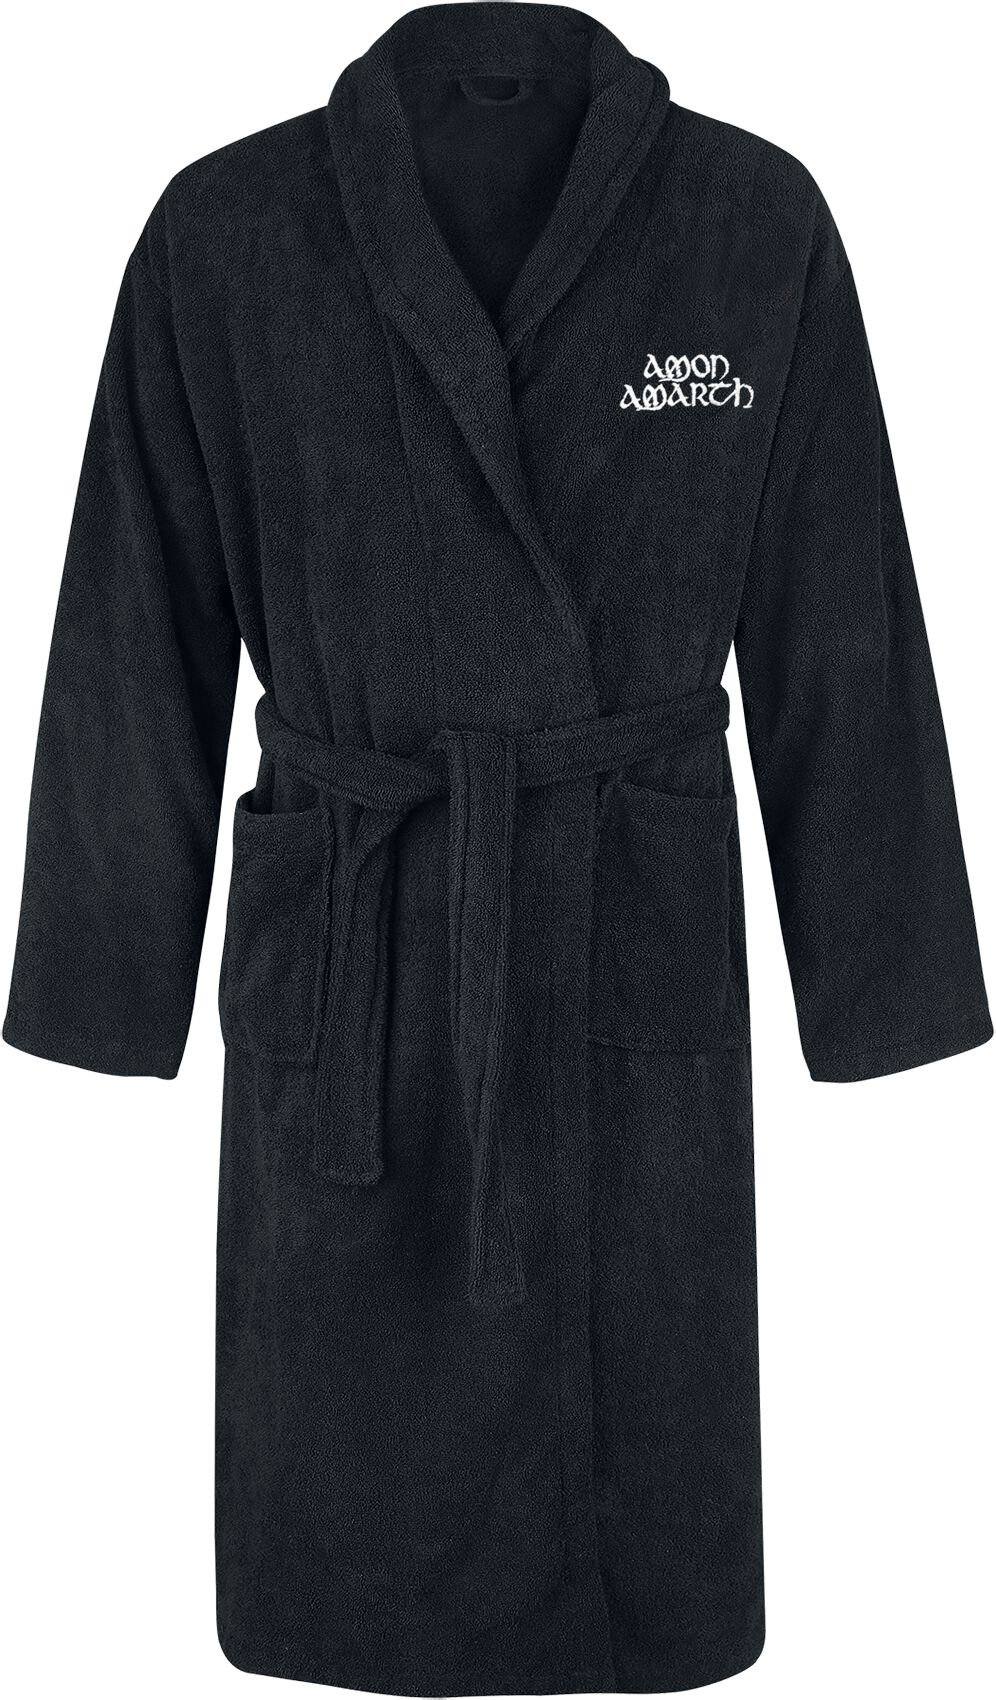 Amon Amarth Bademantel - Logo - S-M bis XXL-3XL - Größe S-M - schwarz  - EMP exklusives Merchandise!